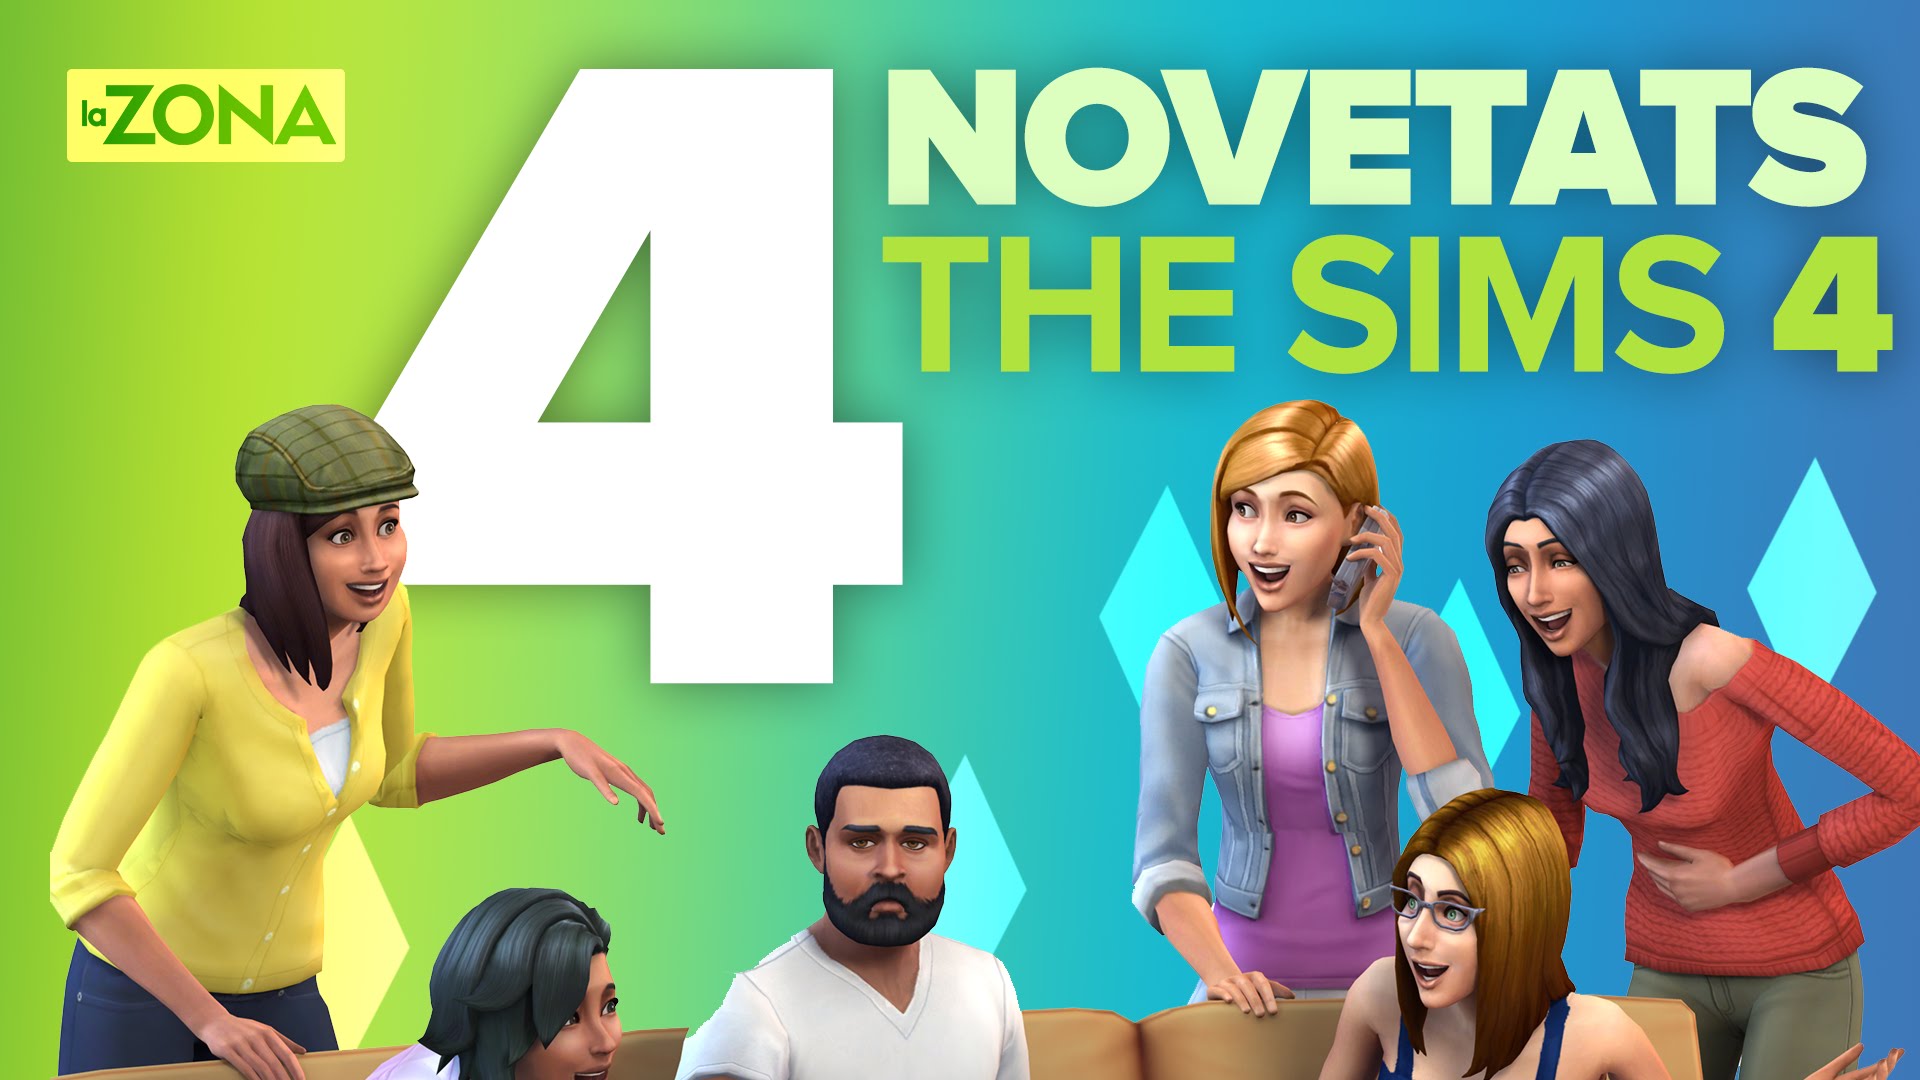 La Zona — 4 novetats estrella de The Sims 4 de Xavalma